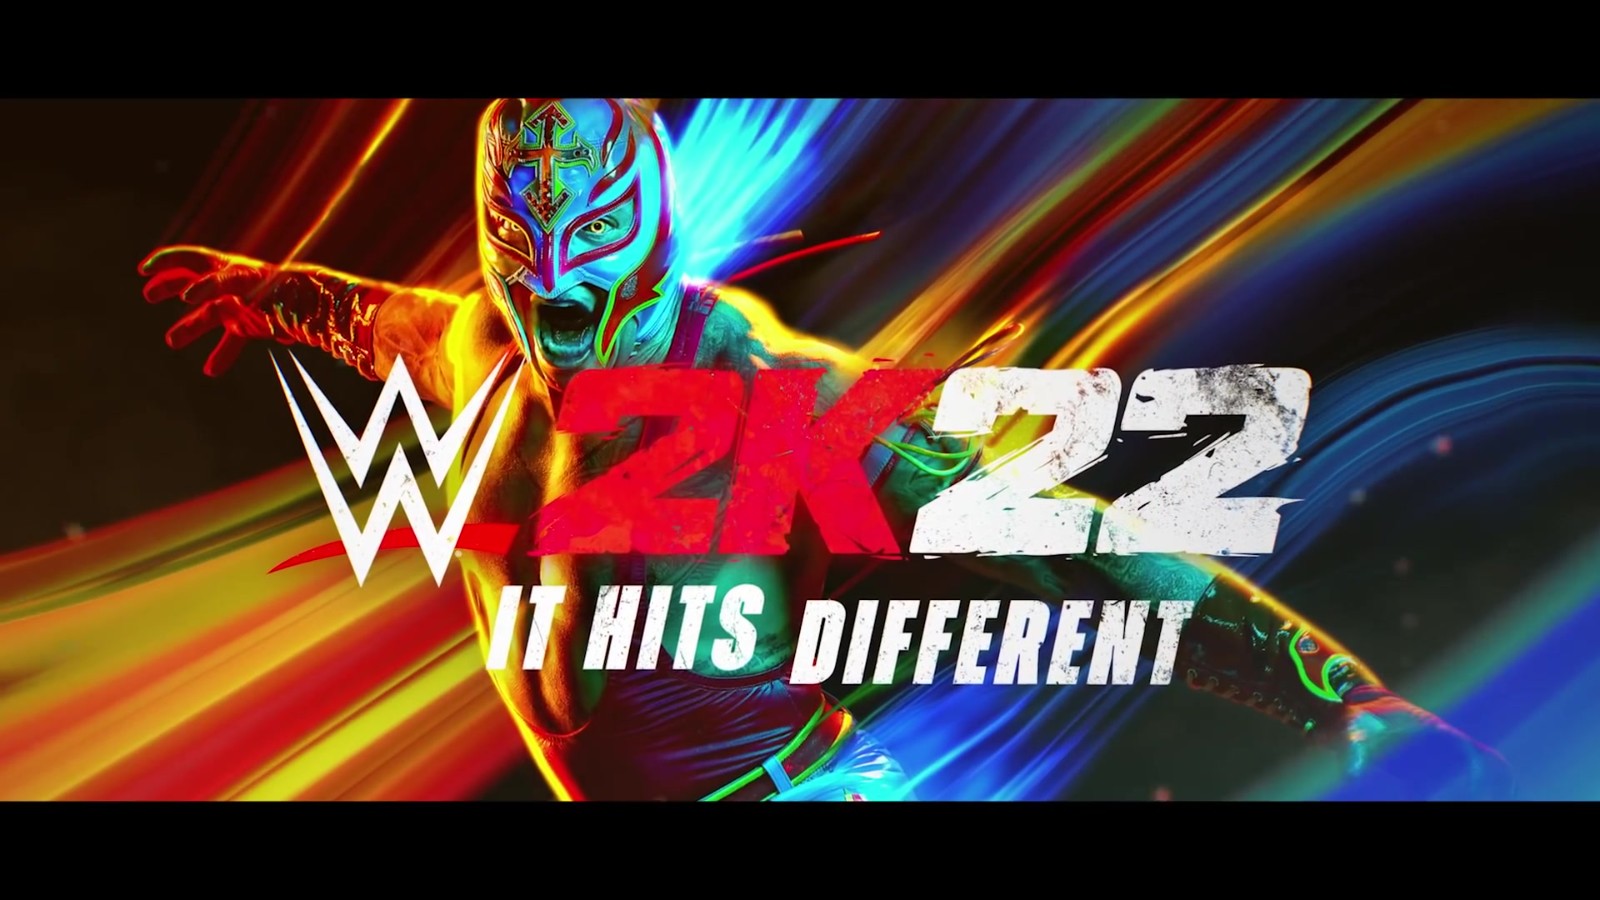 《WWE 2K22》官方公布预告片 确认3月11日推出